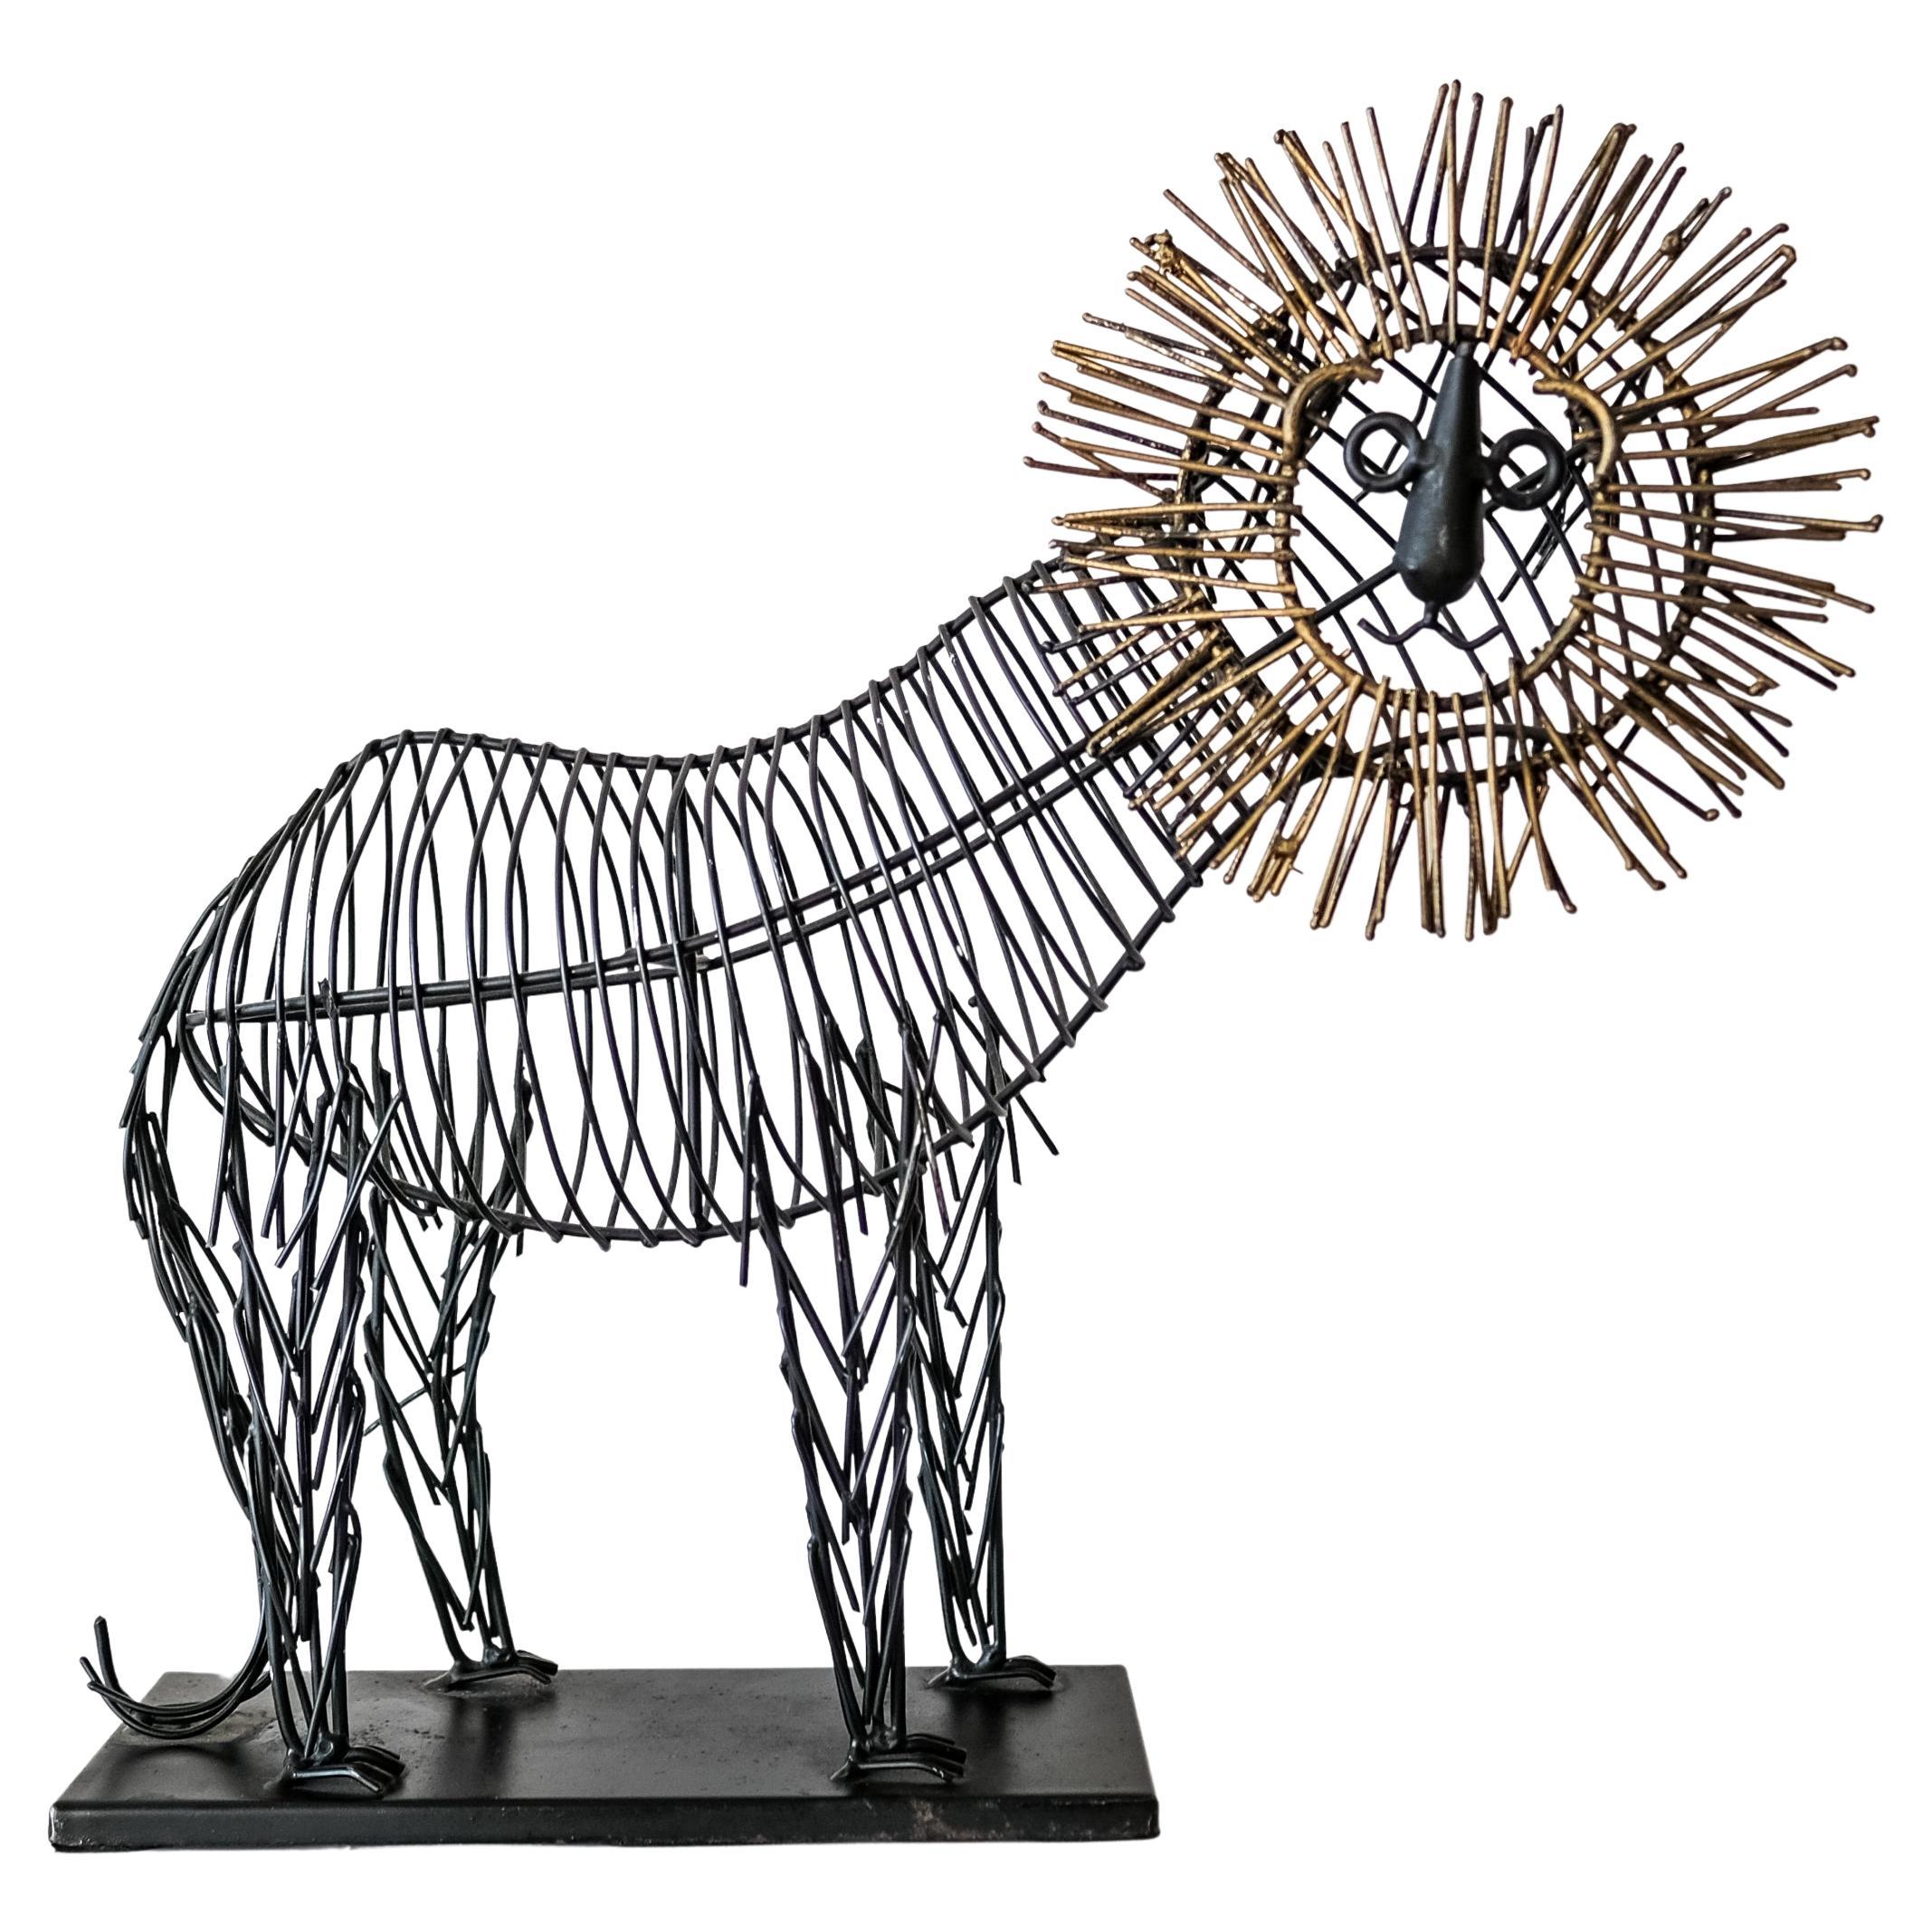 Sculpture de lion fantaisiste en métal métallique dans le style de C. Jere